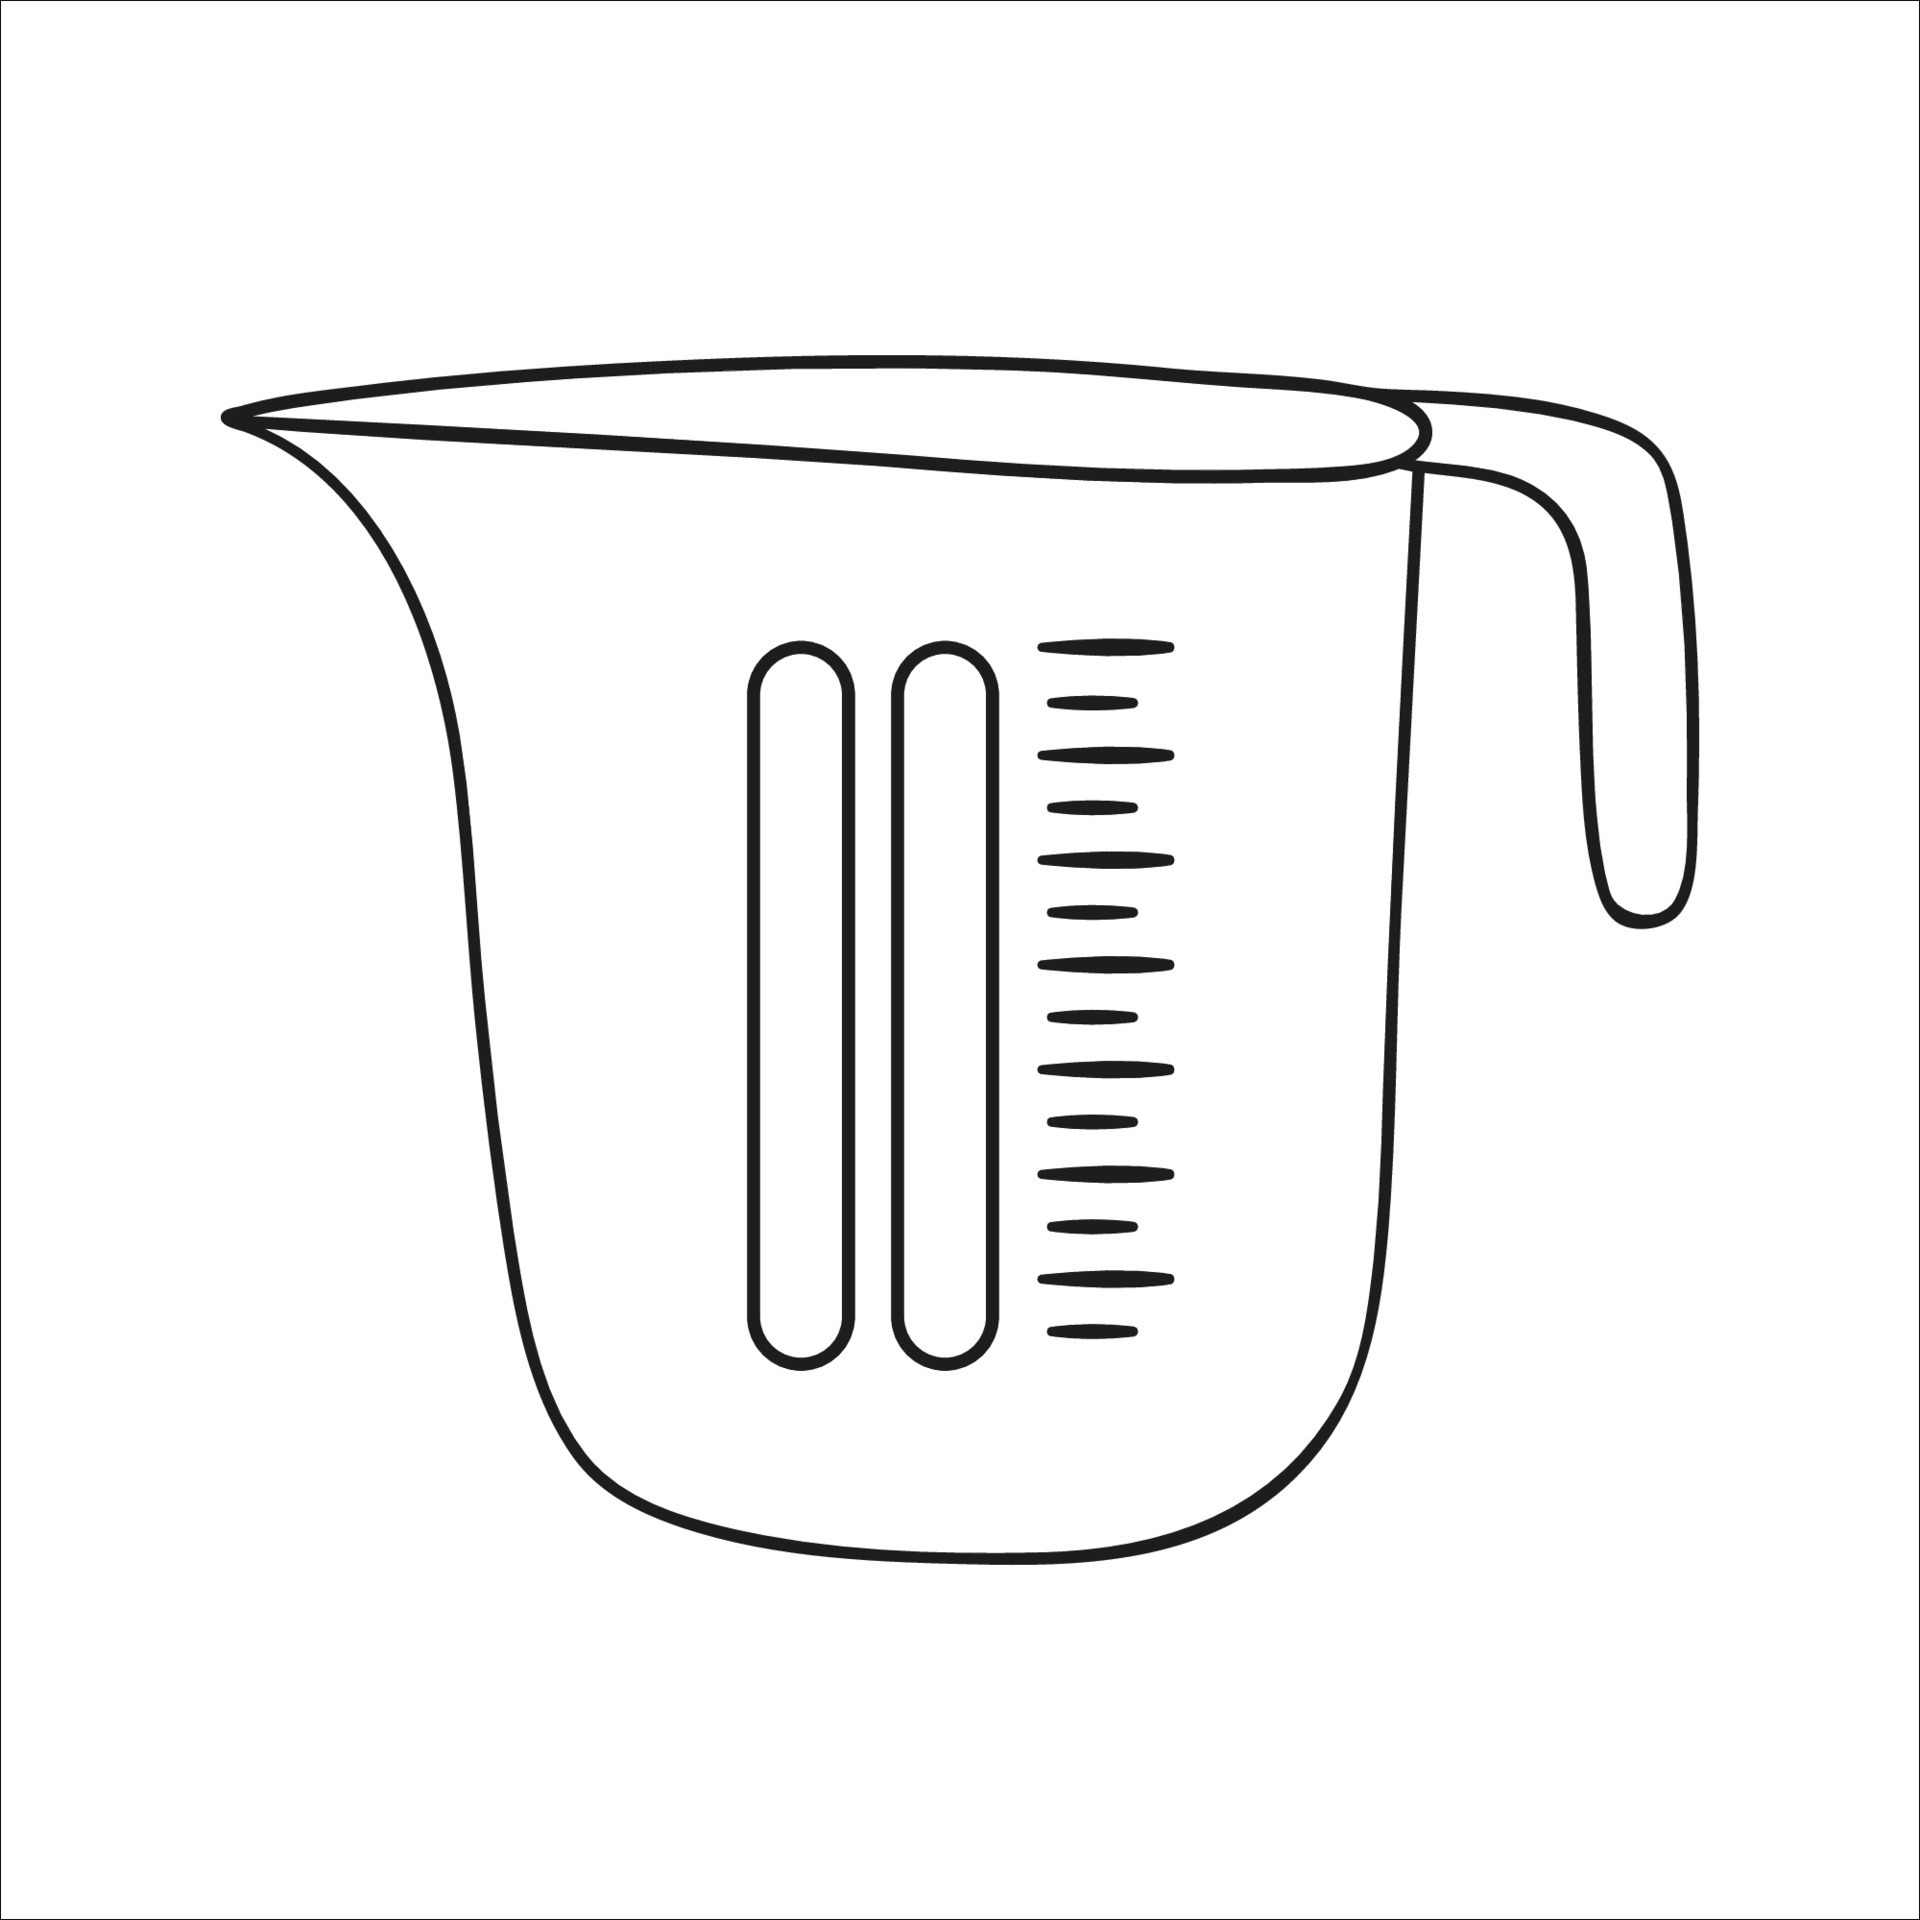 Vaso Medidor De Plástico Para Cocina, Clipart Vectorial En Estilo De  Dibujos Animados Sobre Un Fondo Blanco, Aislado Ilustraciones svg,  vectoriales, clip art vectorizado libre de derechos. Image 169451161